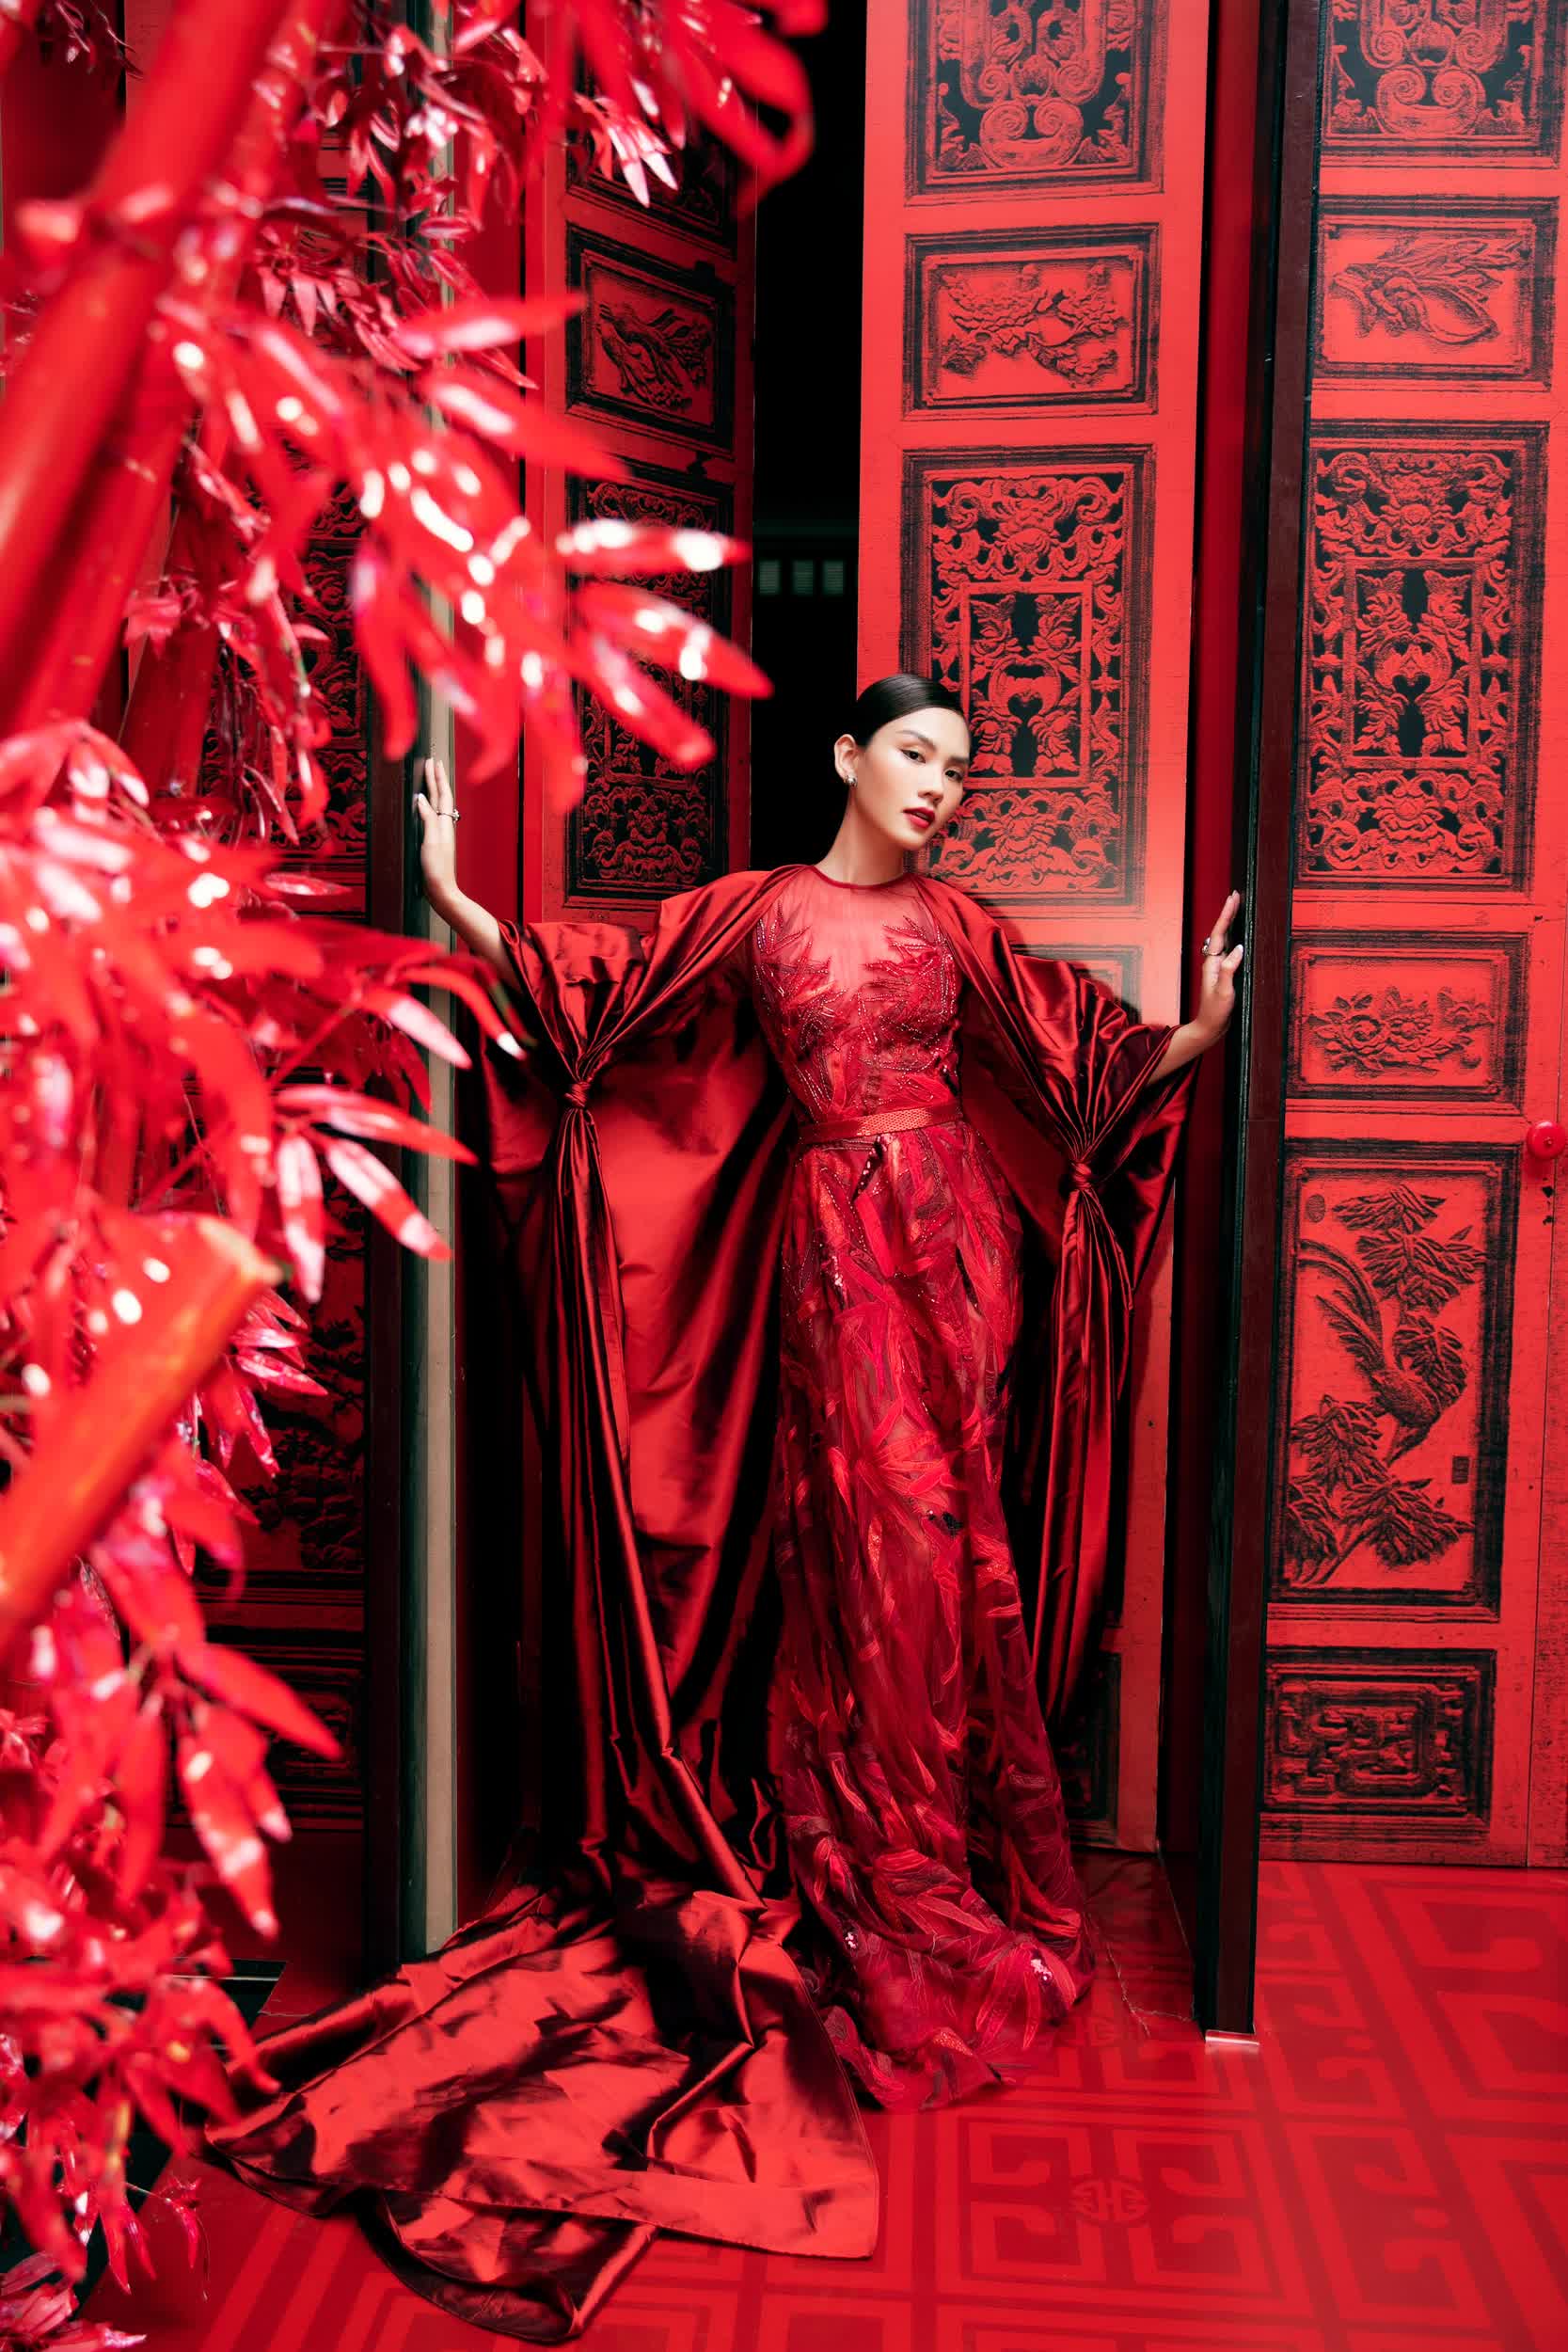 Đỗ Mỹ Linh hóa cô dâu trong bộ sưu tập váy cưới của NTK Lê Thanh Hoà